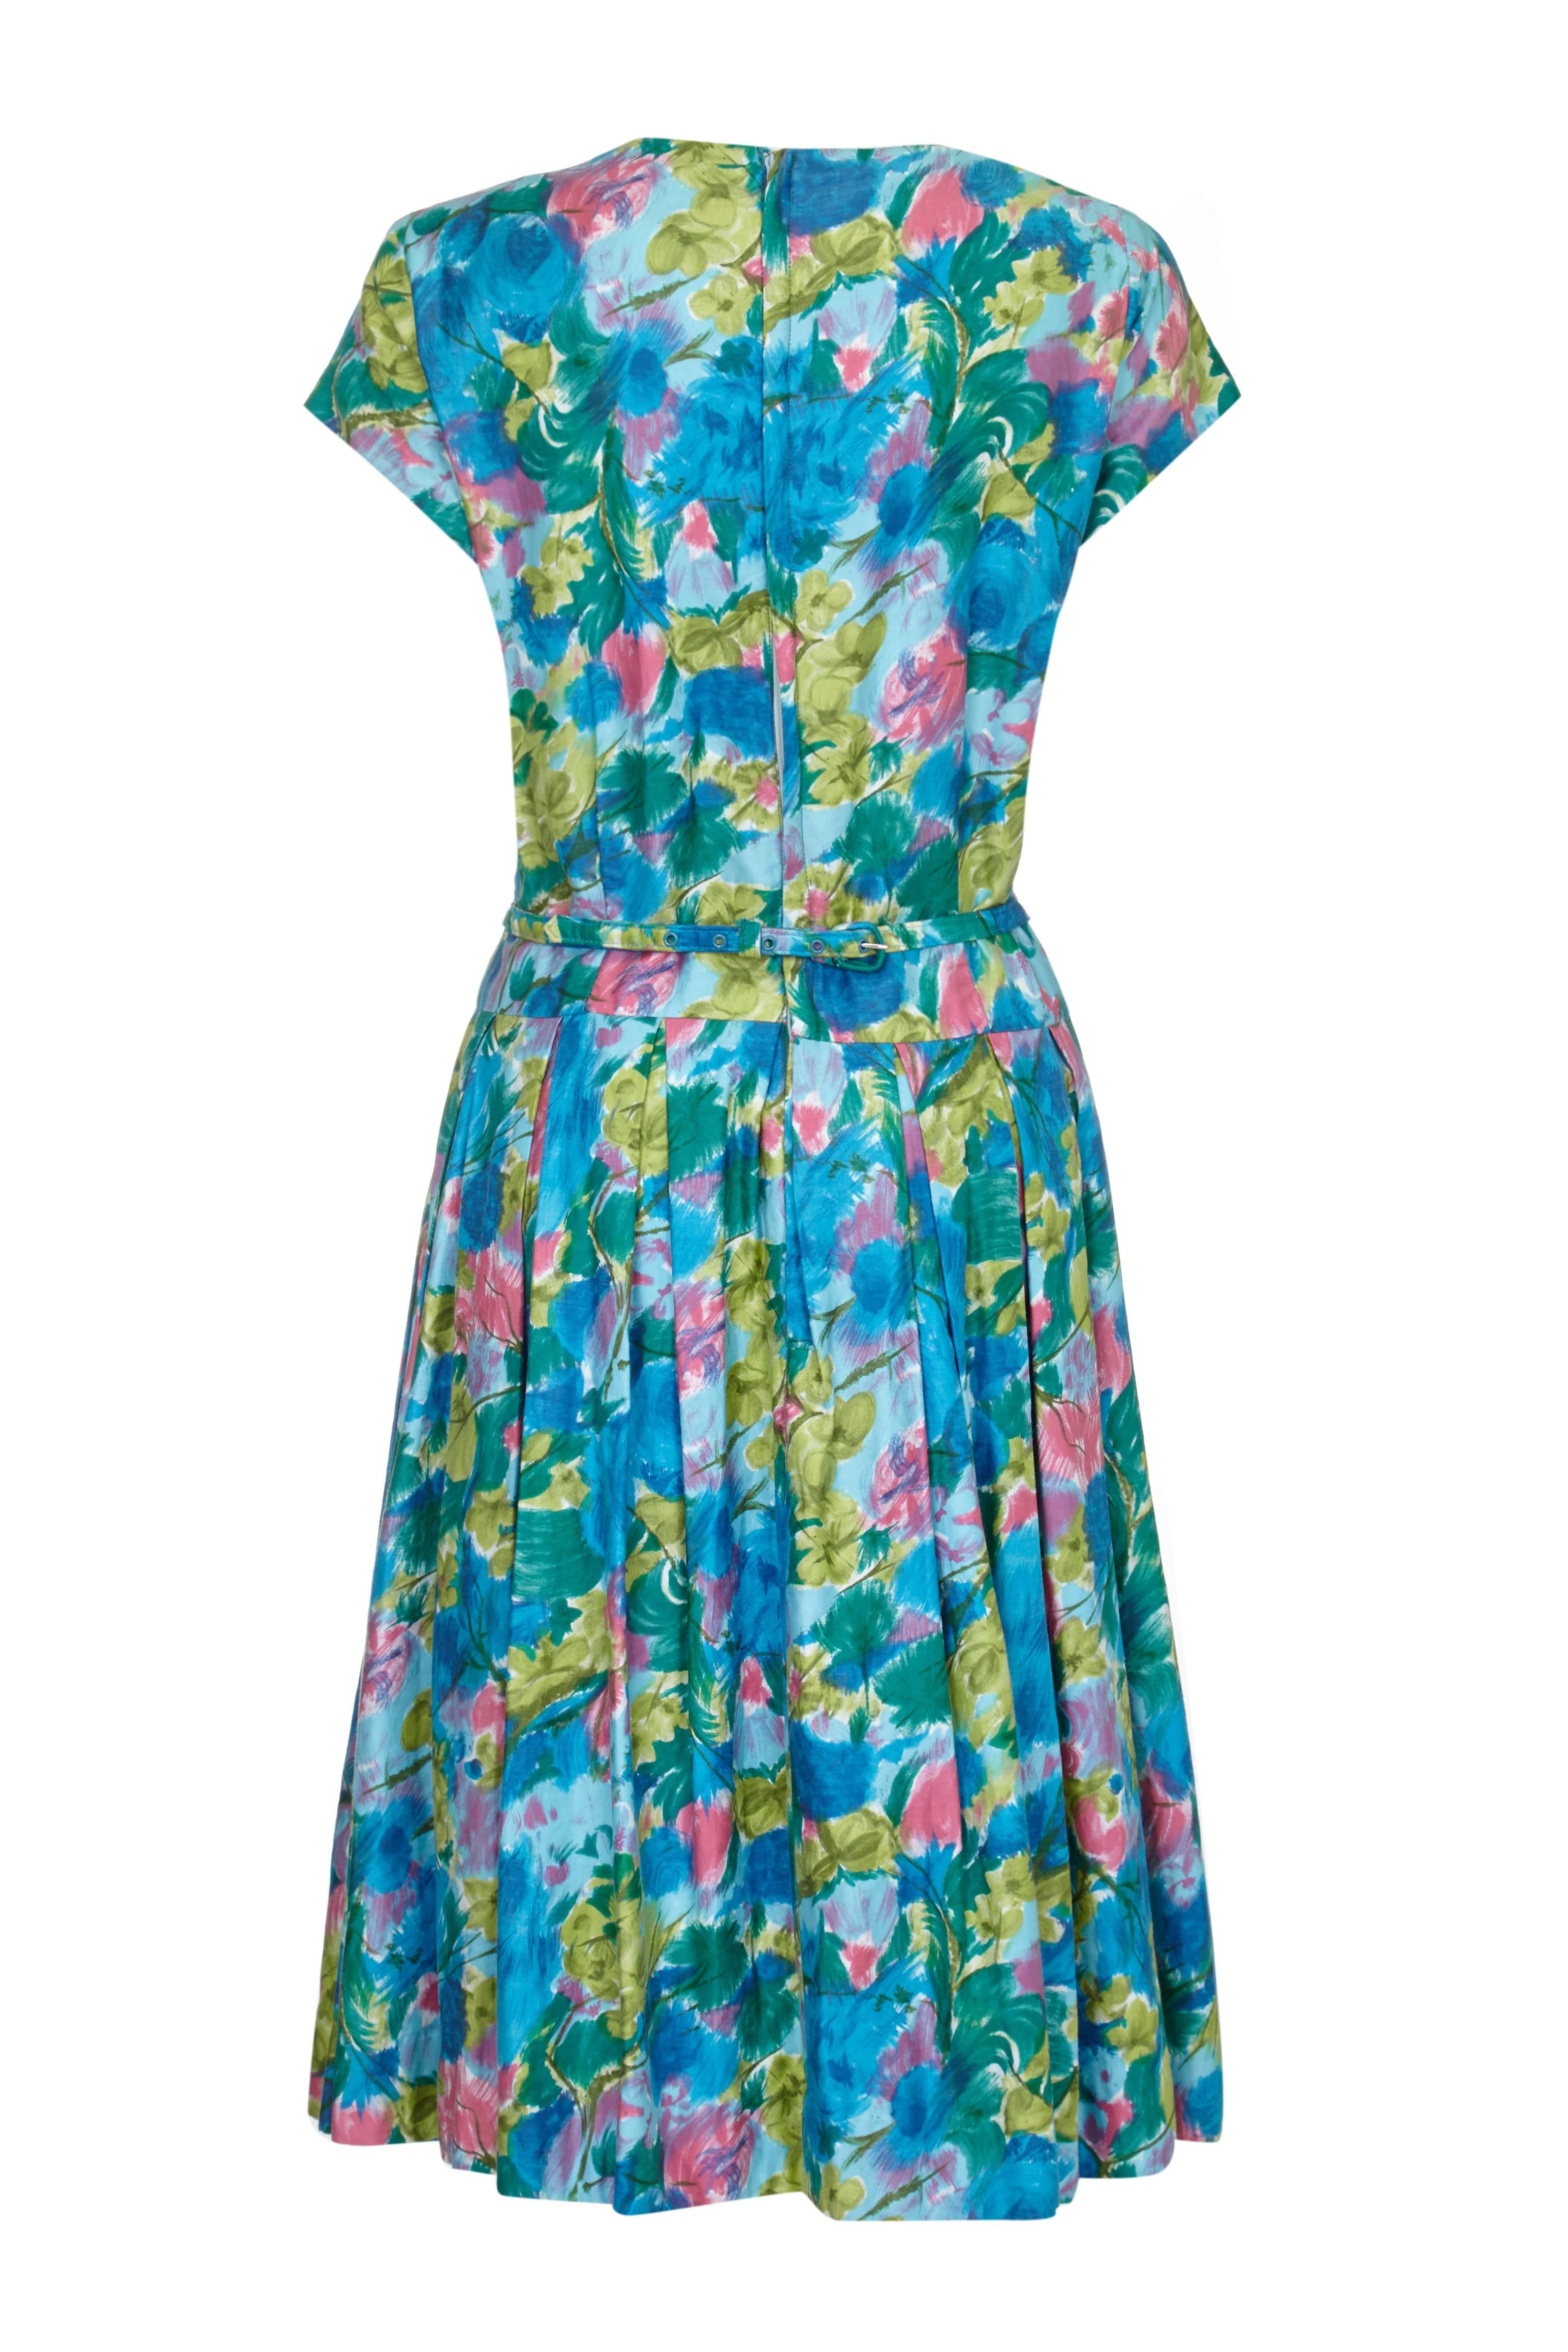 Dieses hübsche Baumwollkleid von Riddella aus den 1950er oder frühen 1960er Jahren mit abstraktem Blumendruck in Grün, Blau und Rosa ist lebhaft, vielseitig und eine gute Wahl für den Sommer. Es verfügt über Prinzessnähte am Mieder mit grünen